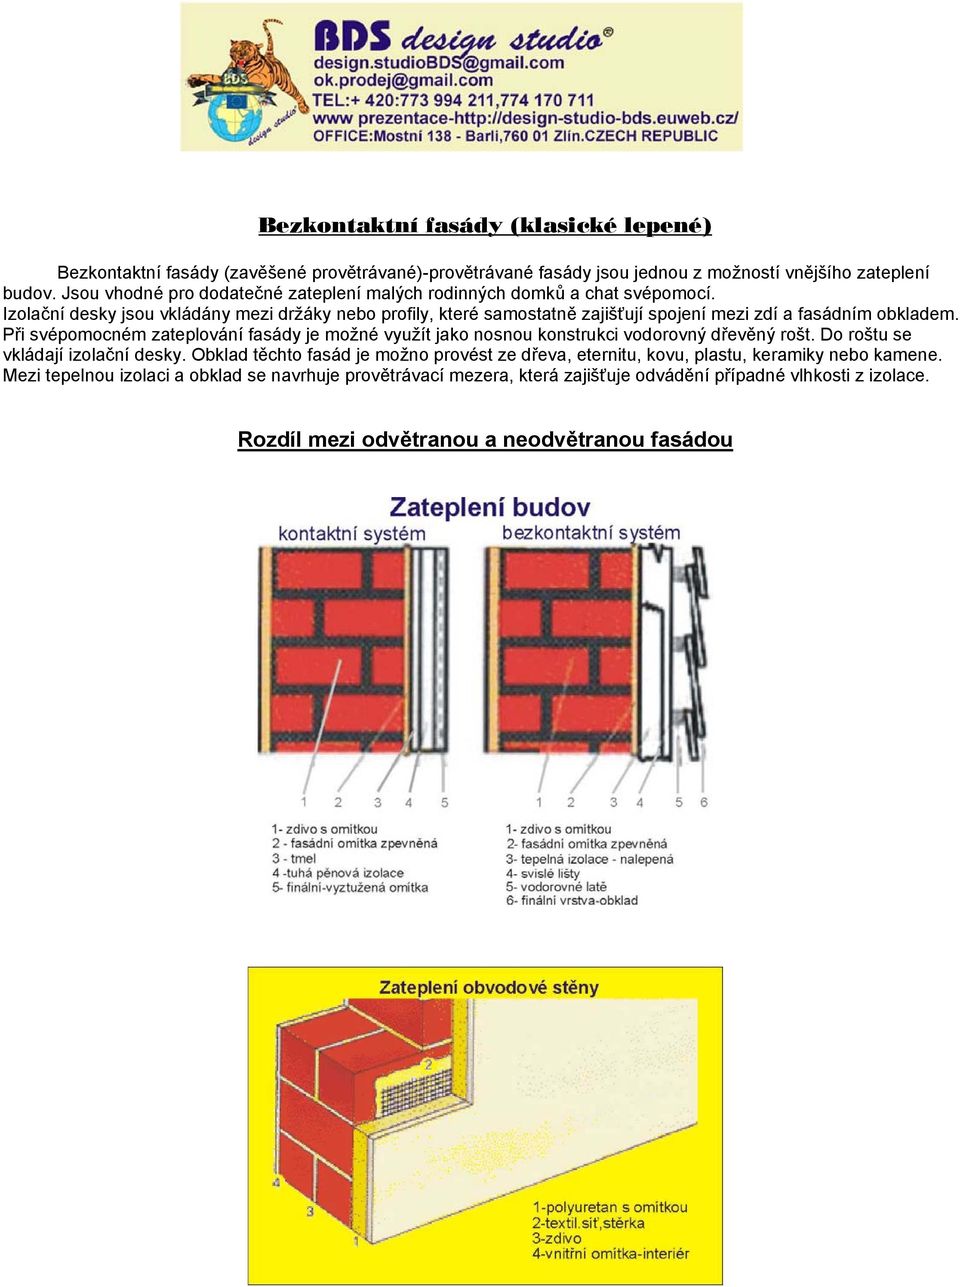 Izolační desky jsou vkládány mezi držáky nebo profily, které samostatně zajišťují spojení mezi zdí a fasádním obkladem.